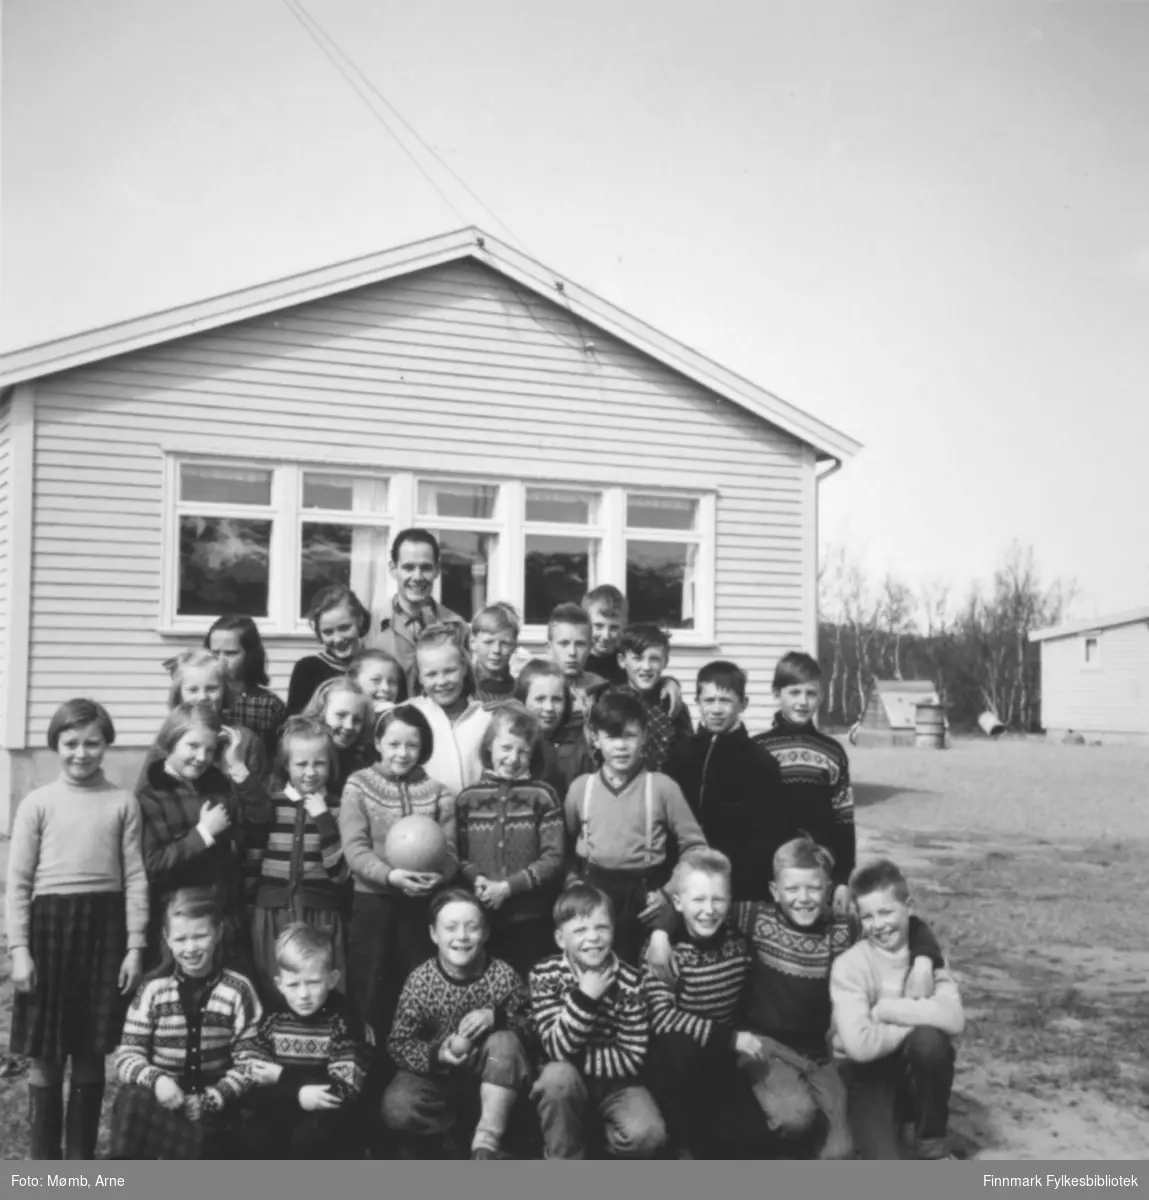 Boftsa skolens 4. og 5. klasse sammen med sin lærer Arne Mømb fra Øvre Rendal. Året er 1957-58.